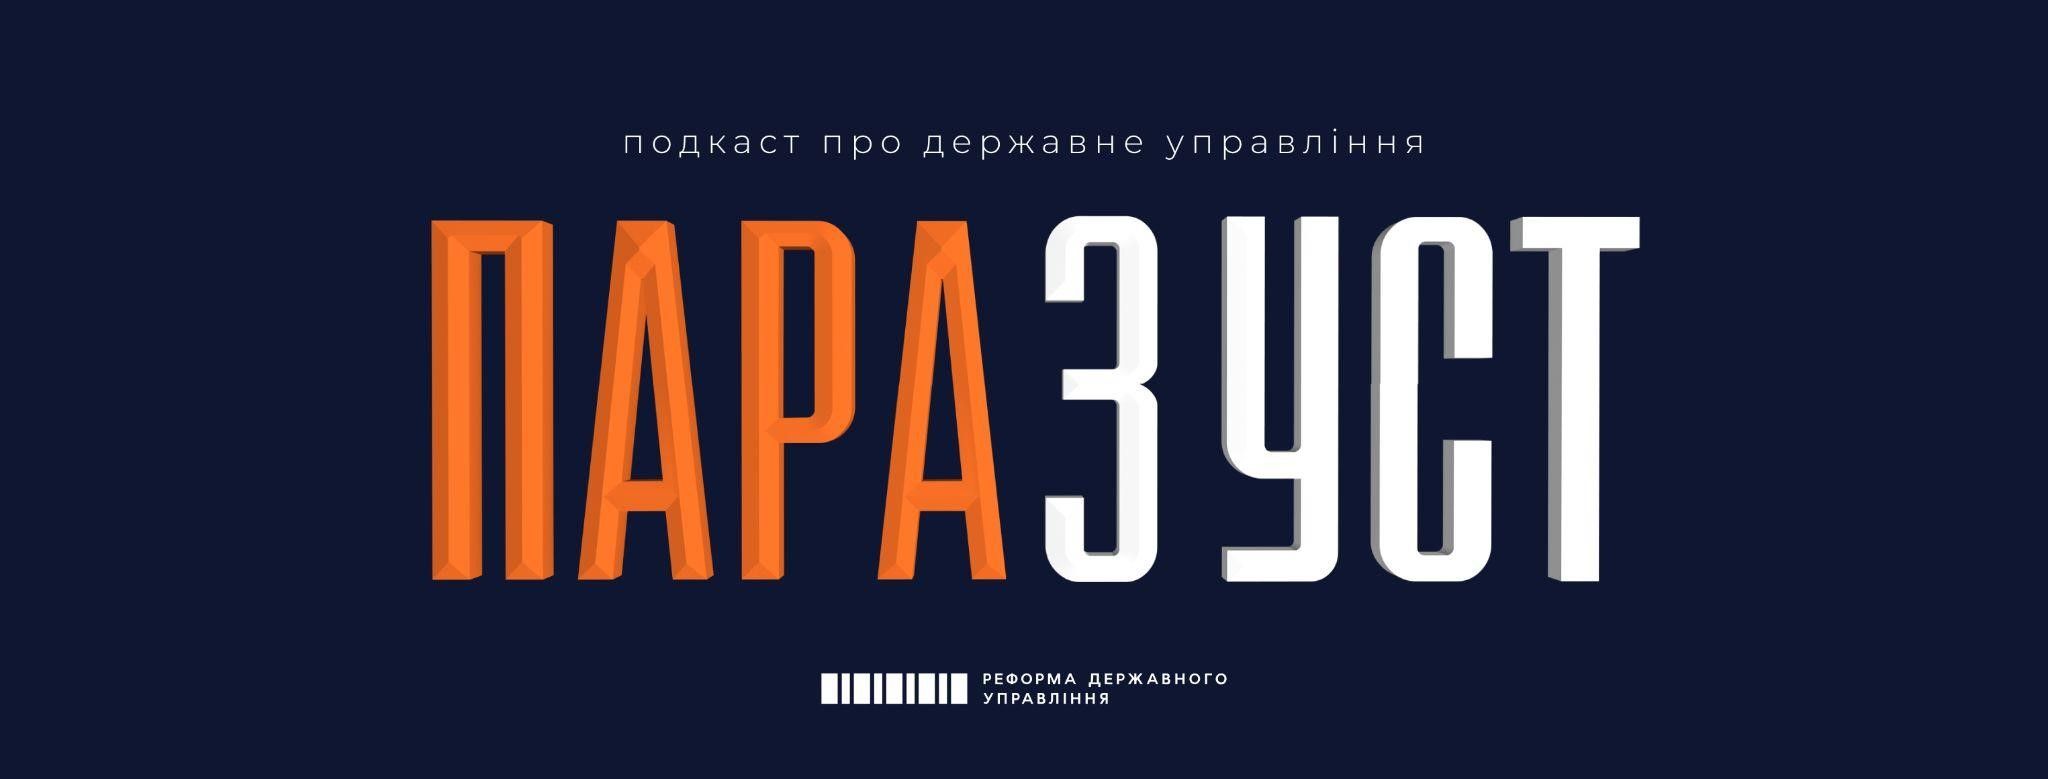 В Україні запустився подкаст про державні інституції «Пара з уст»